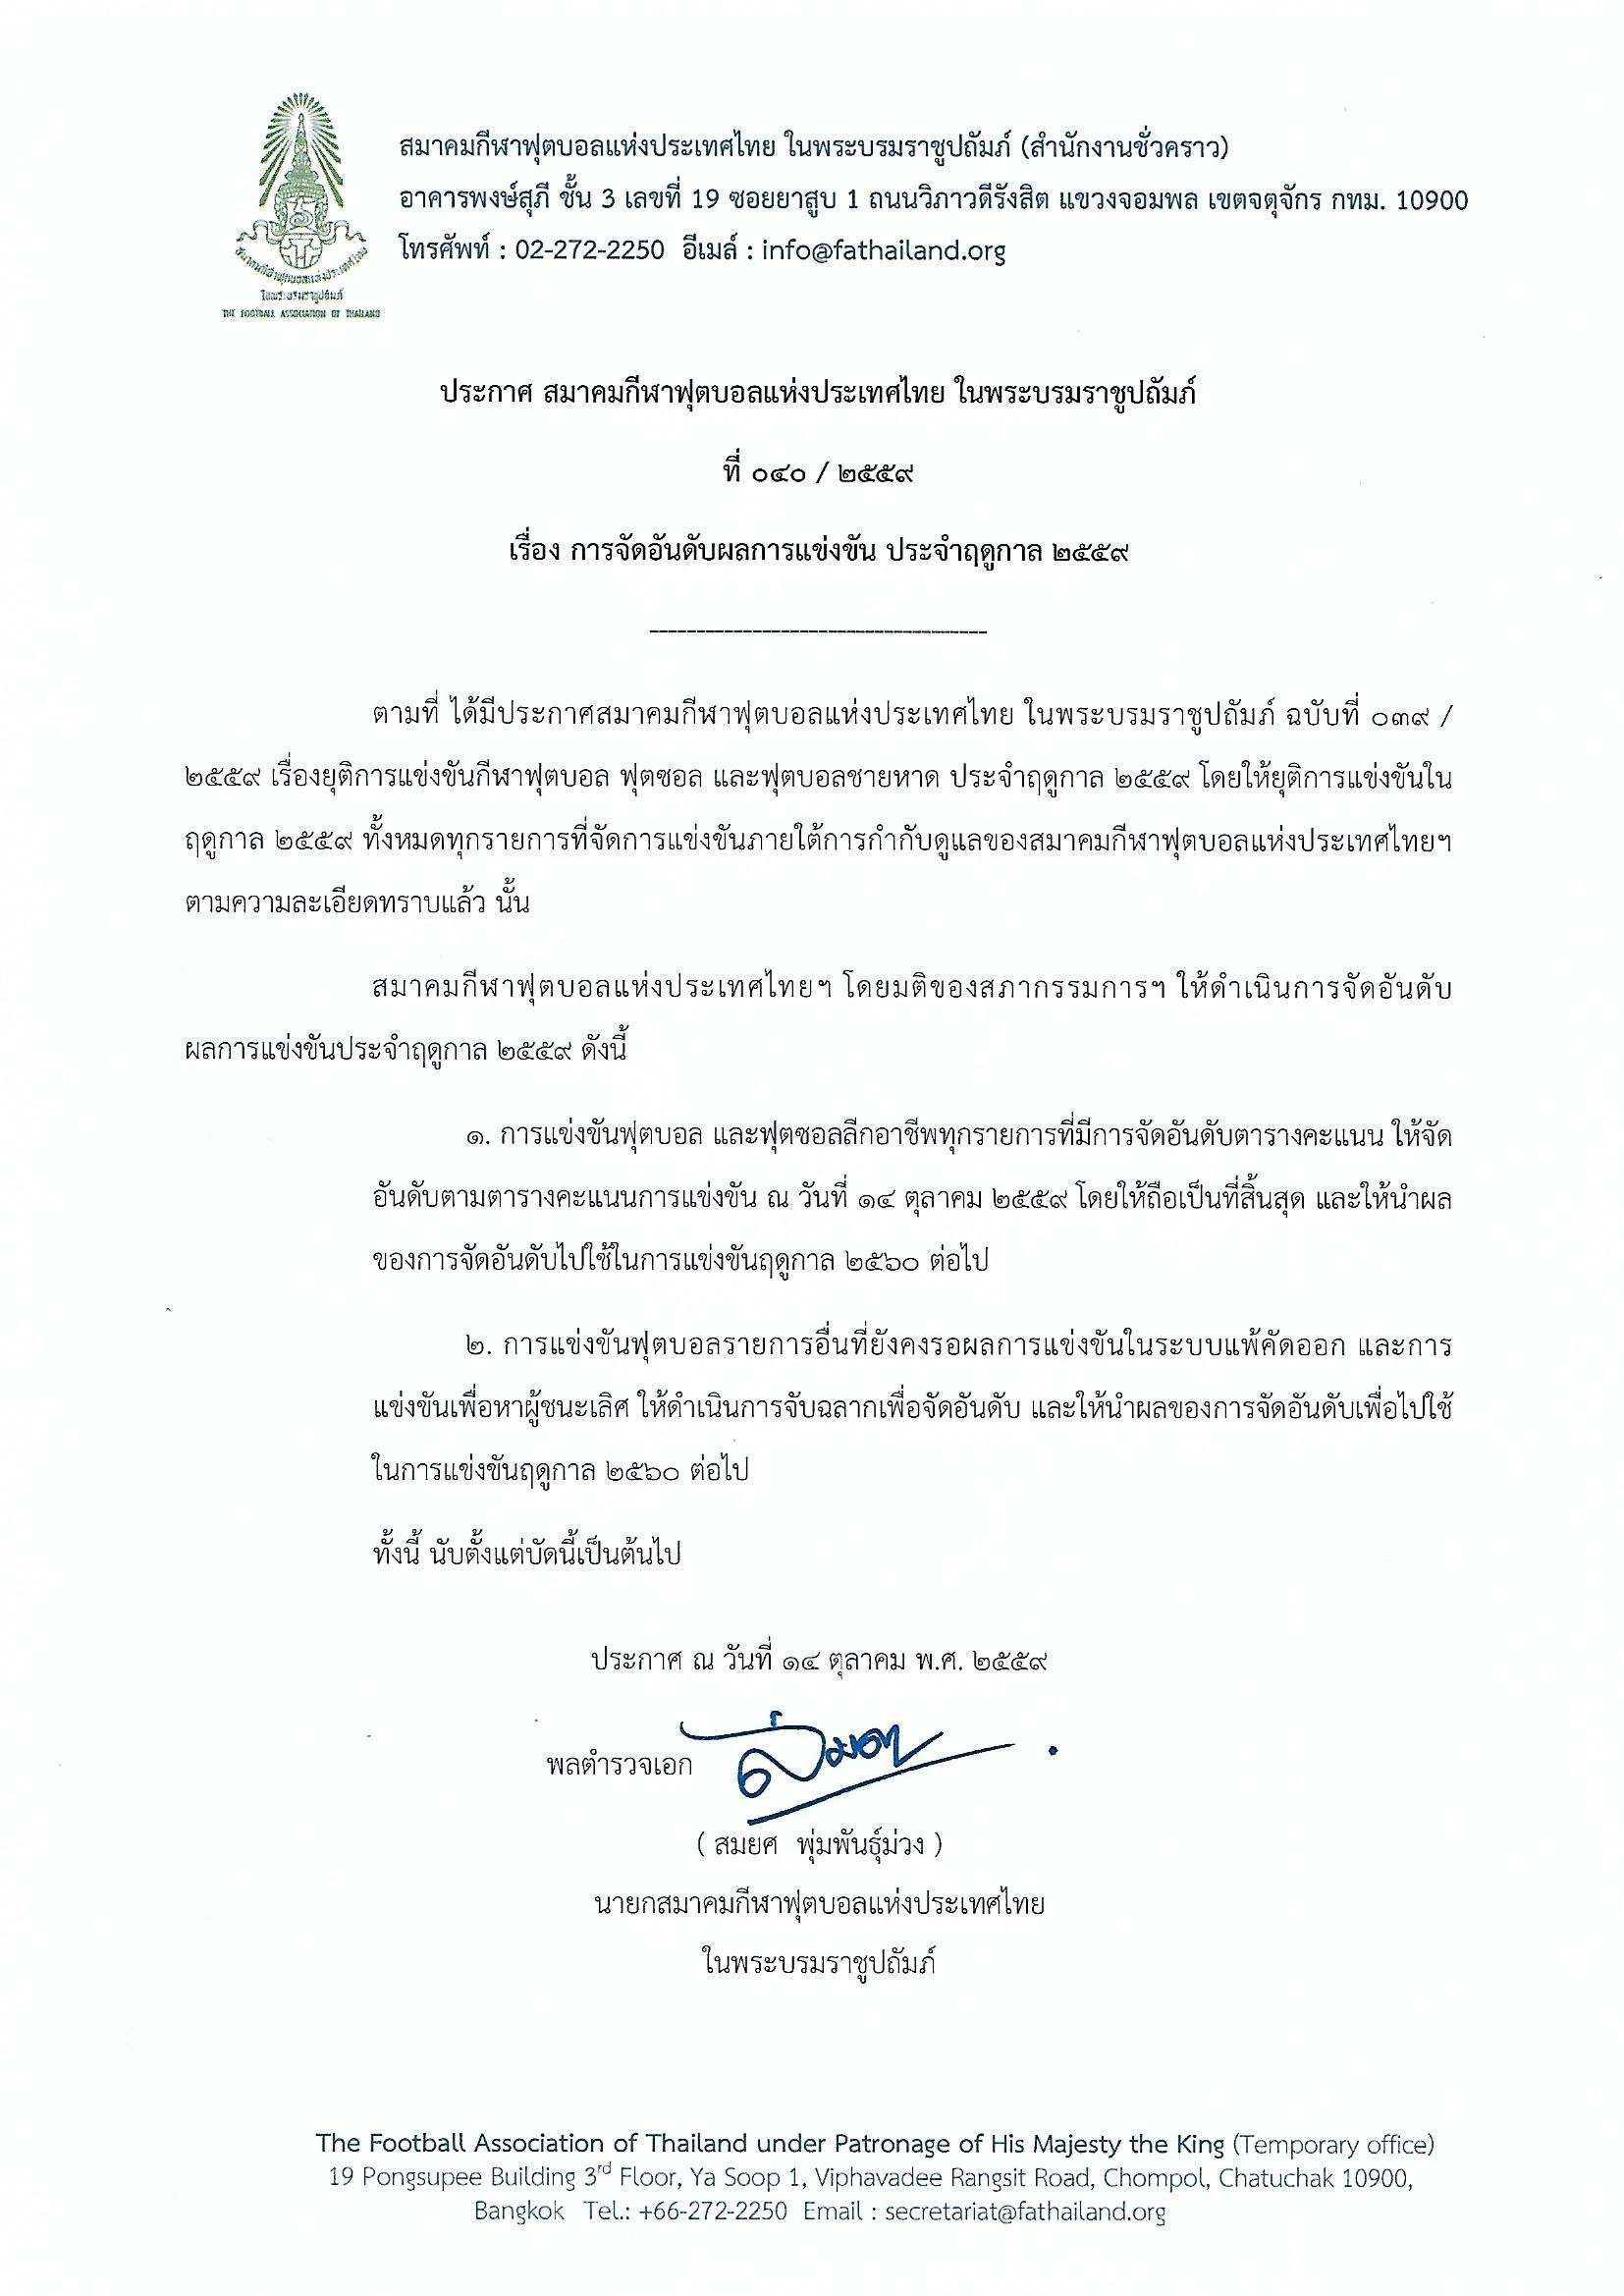 国王去世,泰国足协宣布本年度足球联赛结束 - 